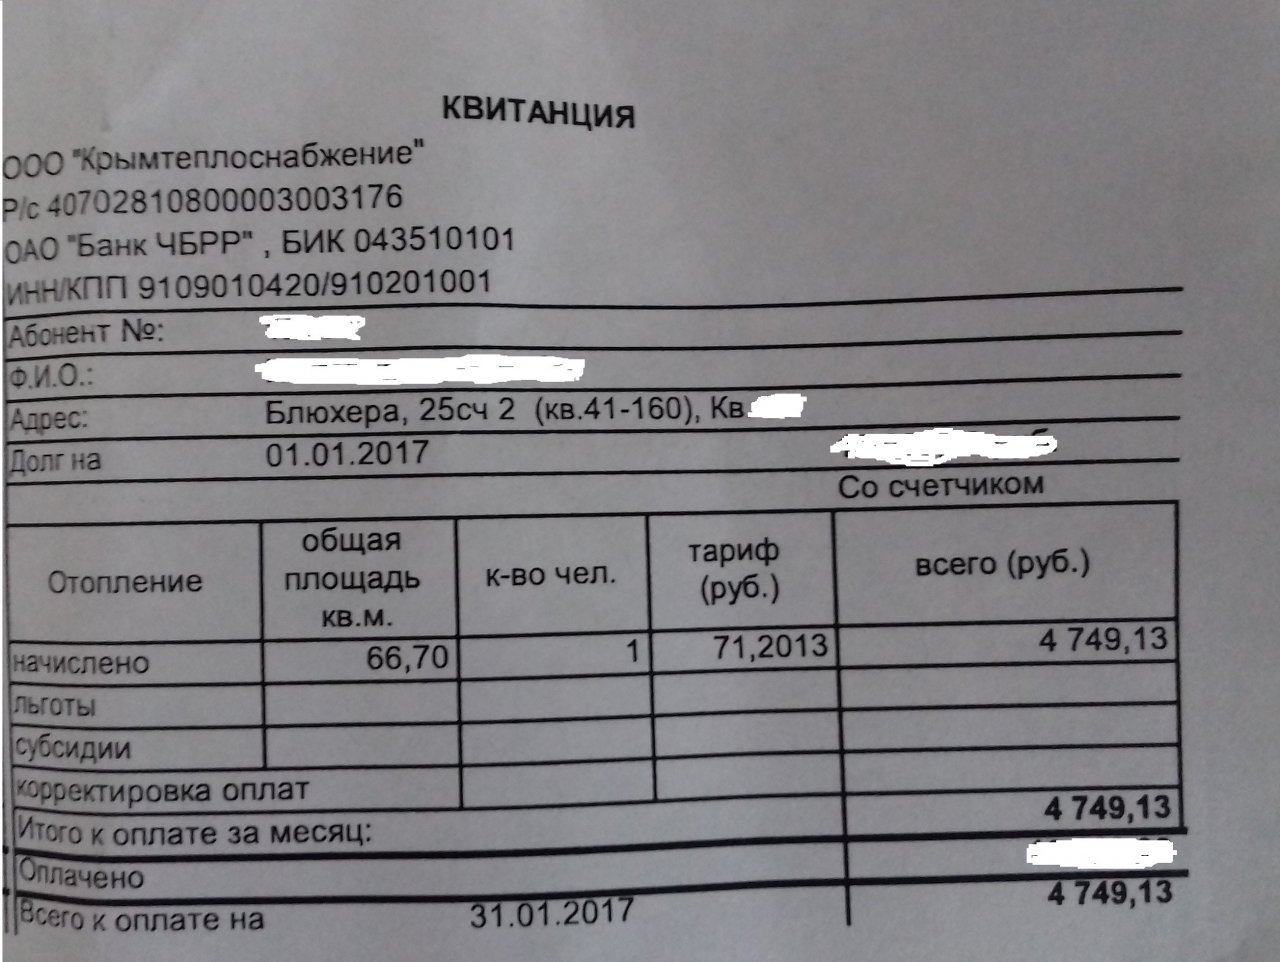 В Керчи людям пришли счета за отопление по 5 тыс рублей